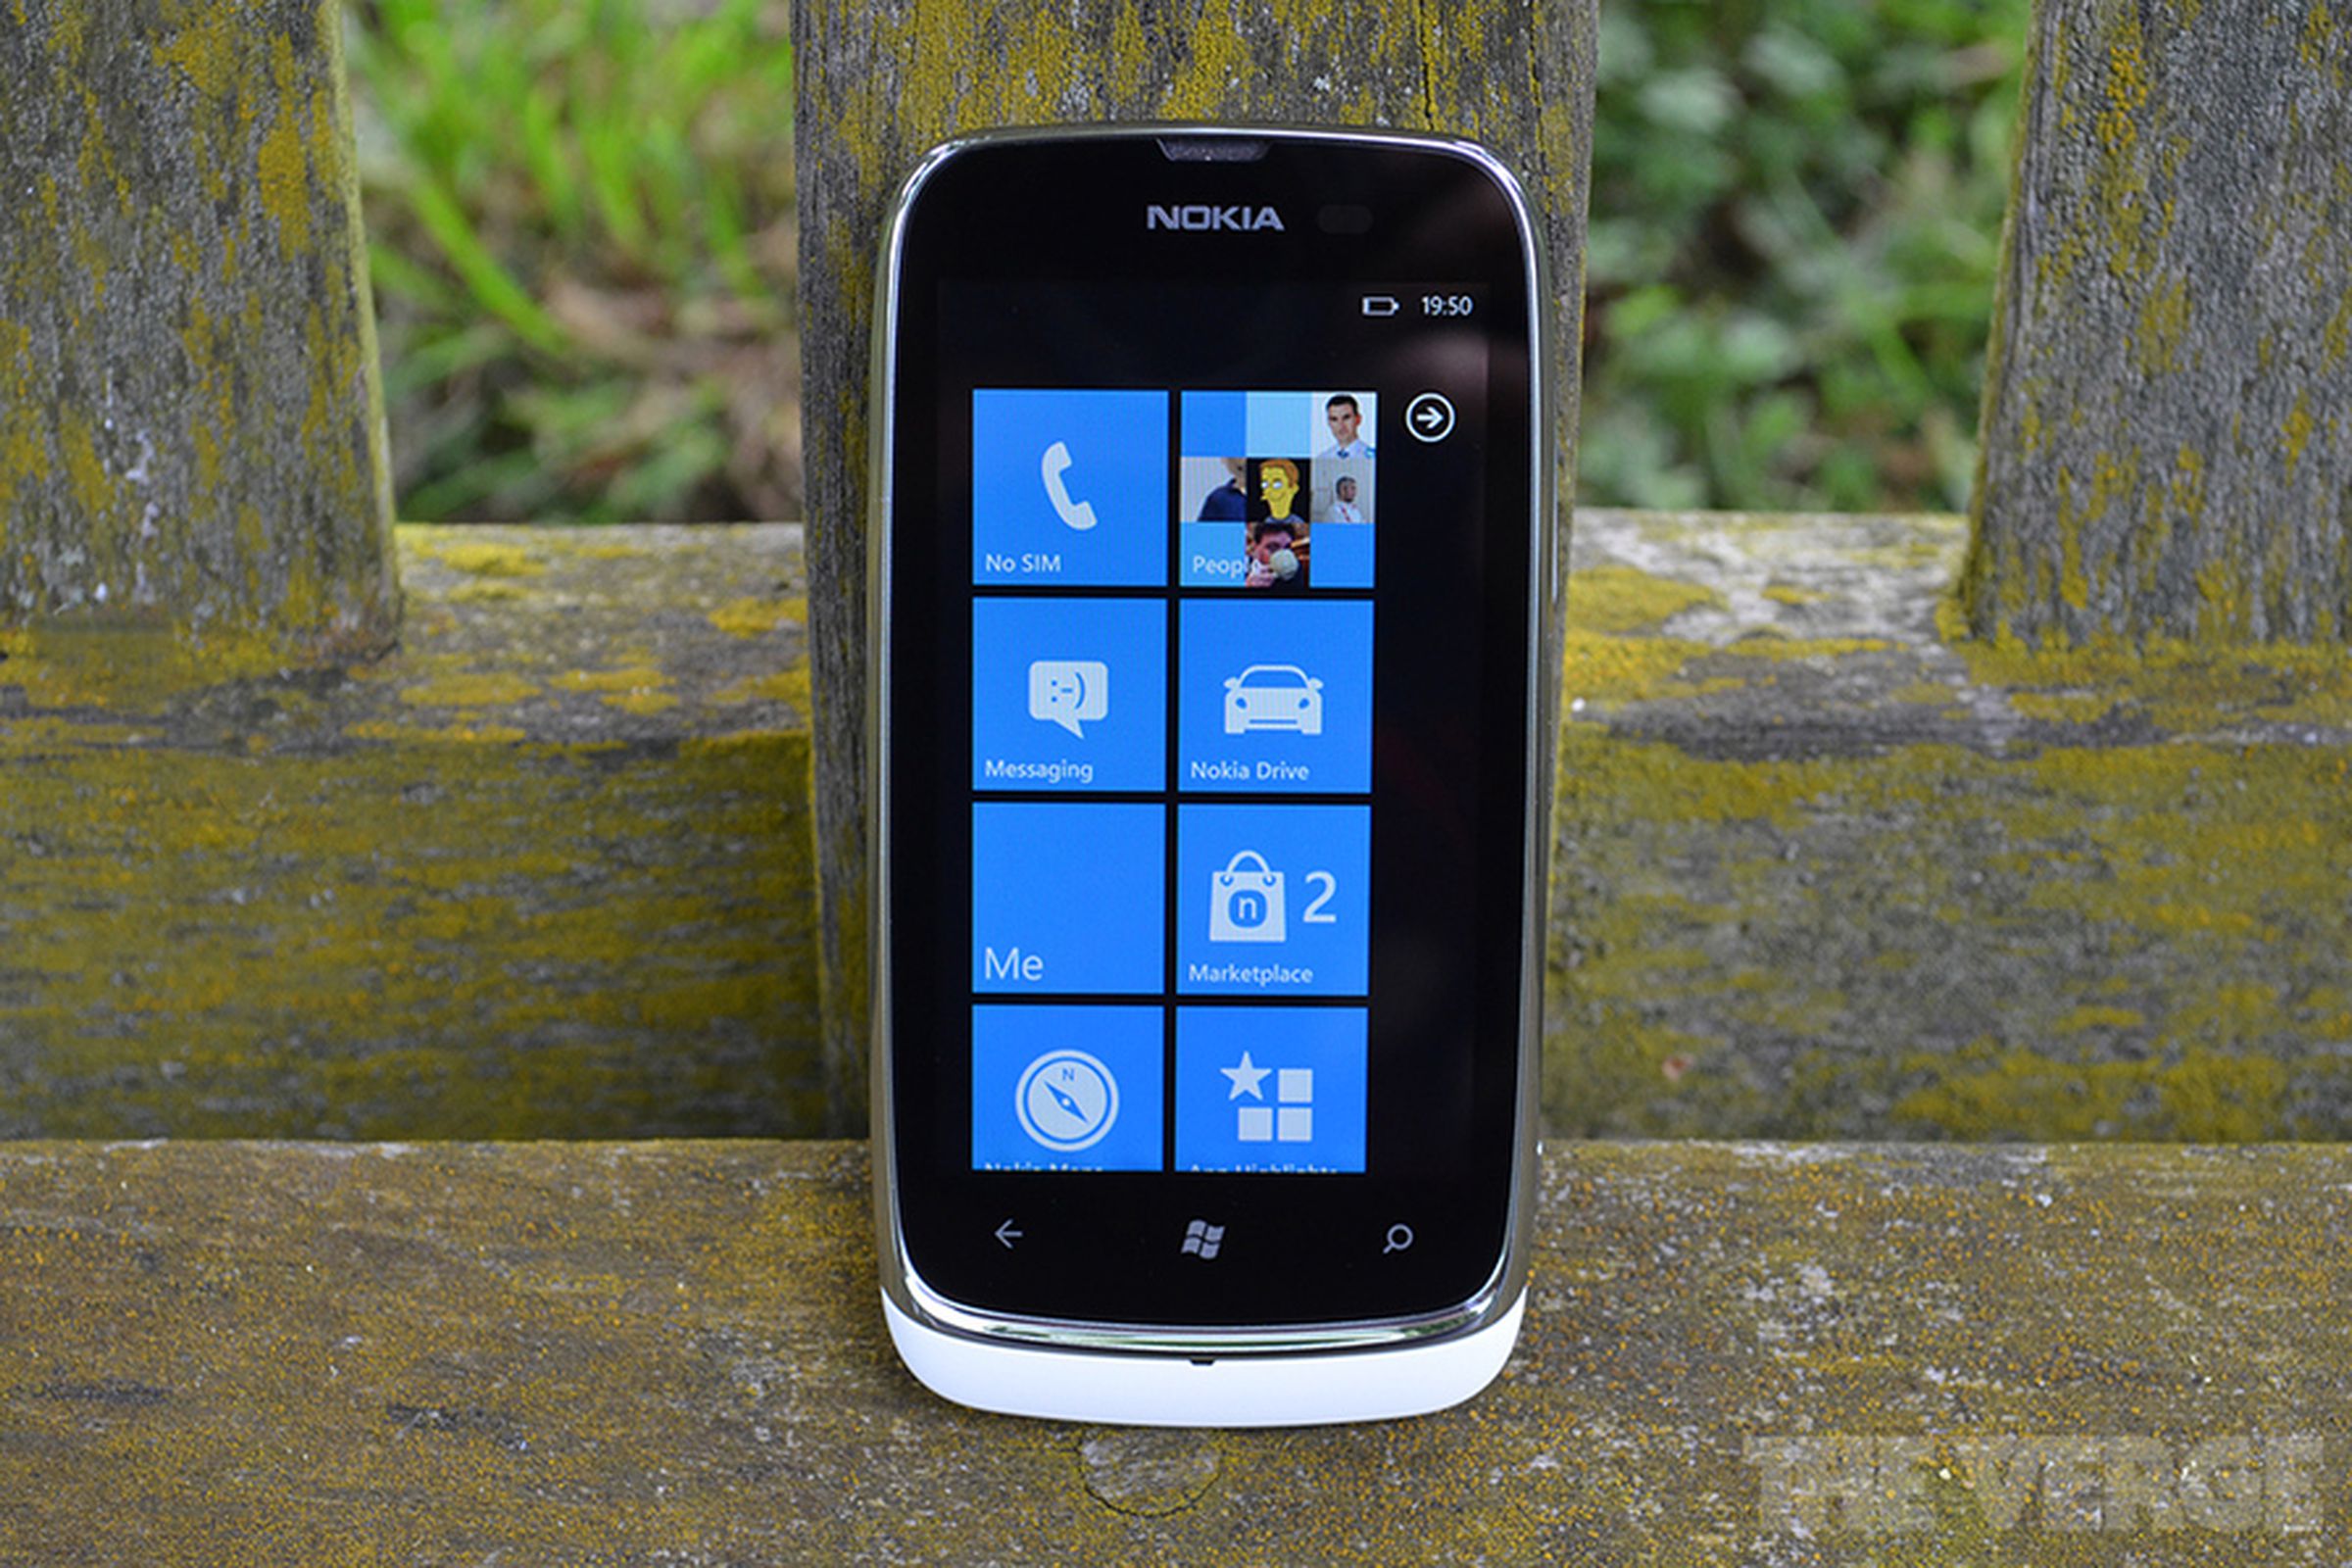 Nokia Lumia 610 hero (1024px)